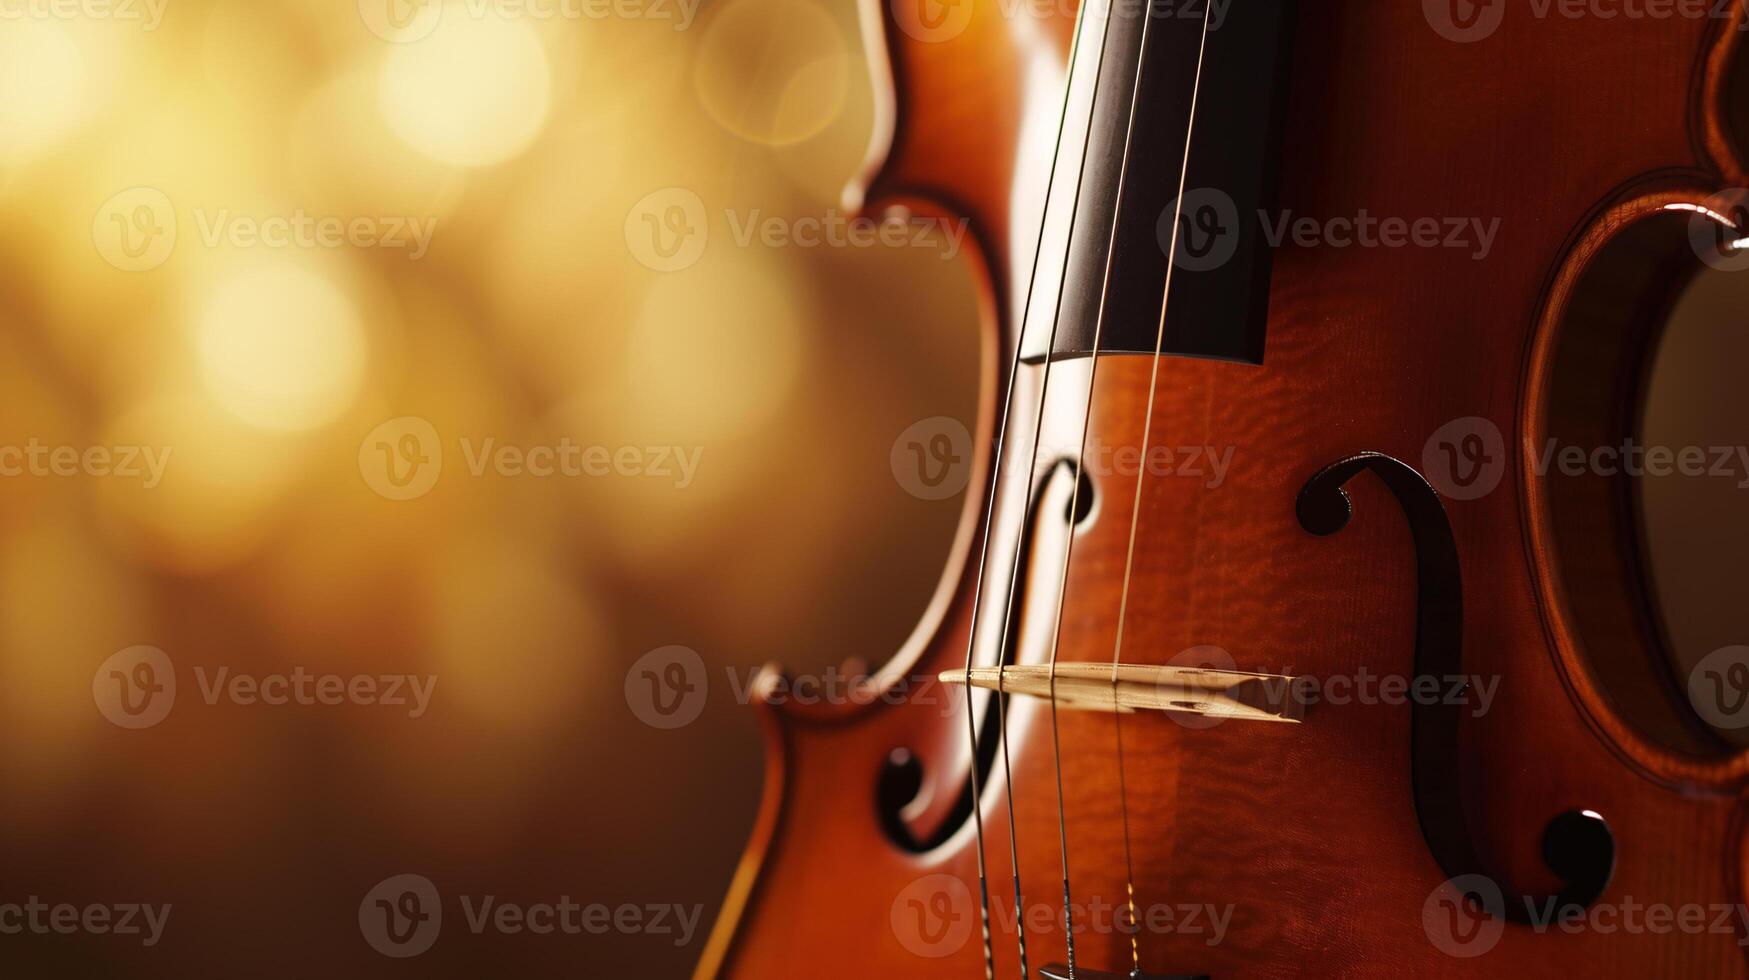 harmoni av musikalisk instrument, fokusera på de elegant kurvor av en fiol foto